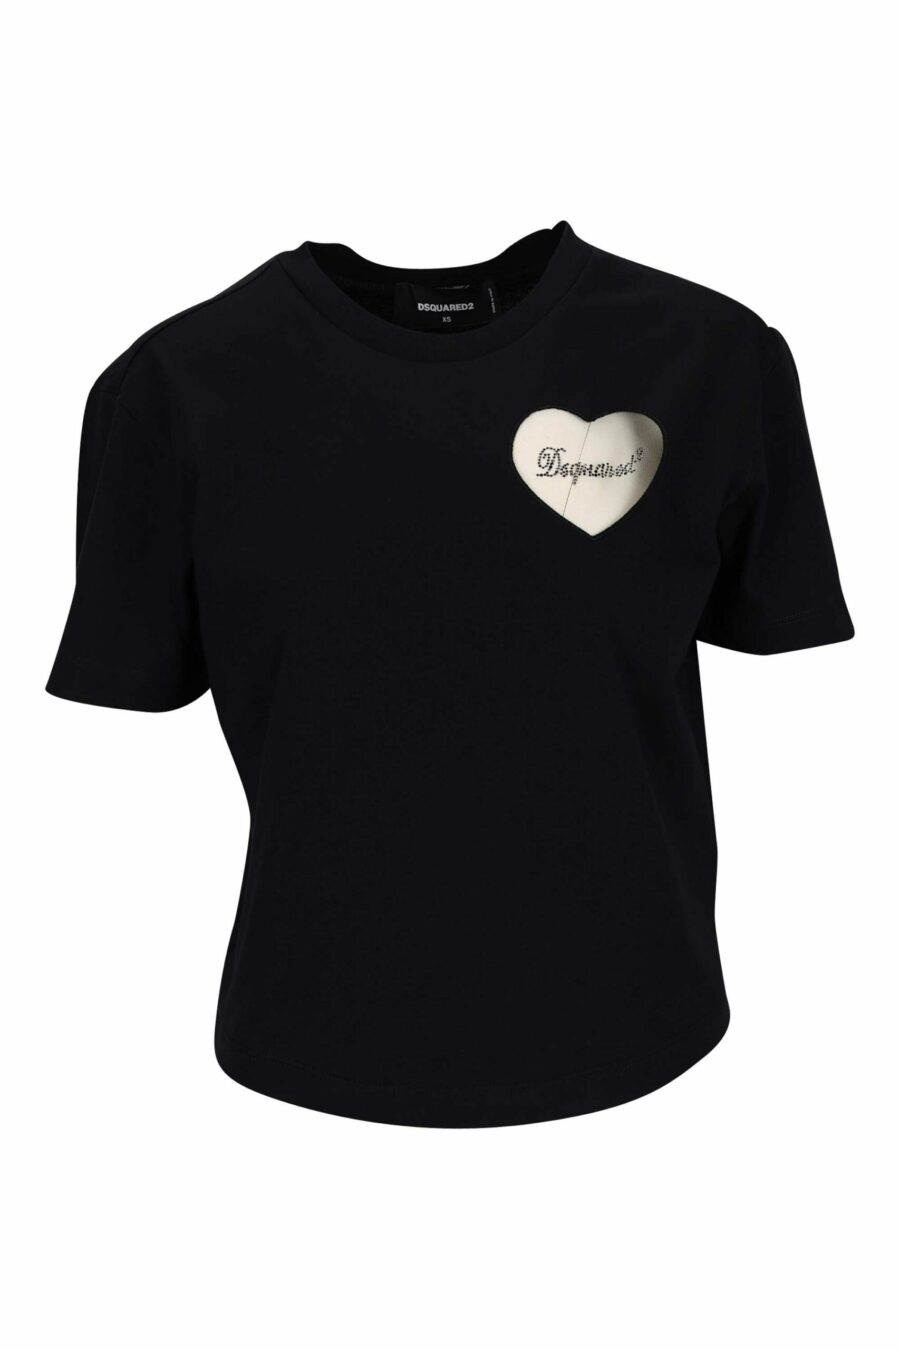 T-shirt noir avec logo en forme de cœur transparent - 8054148332044 scaled